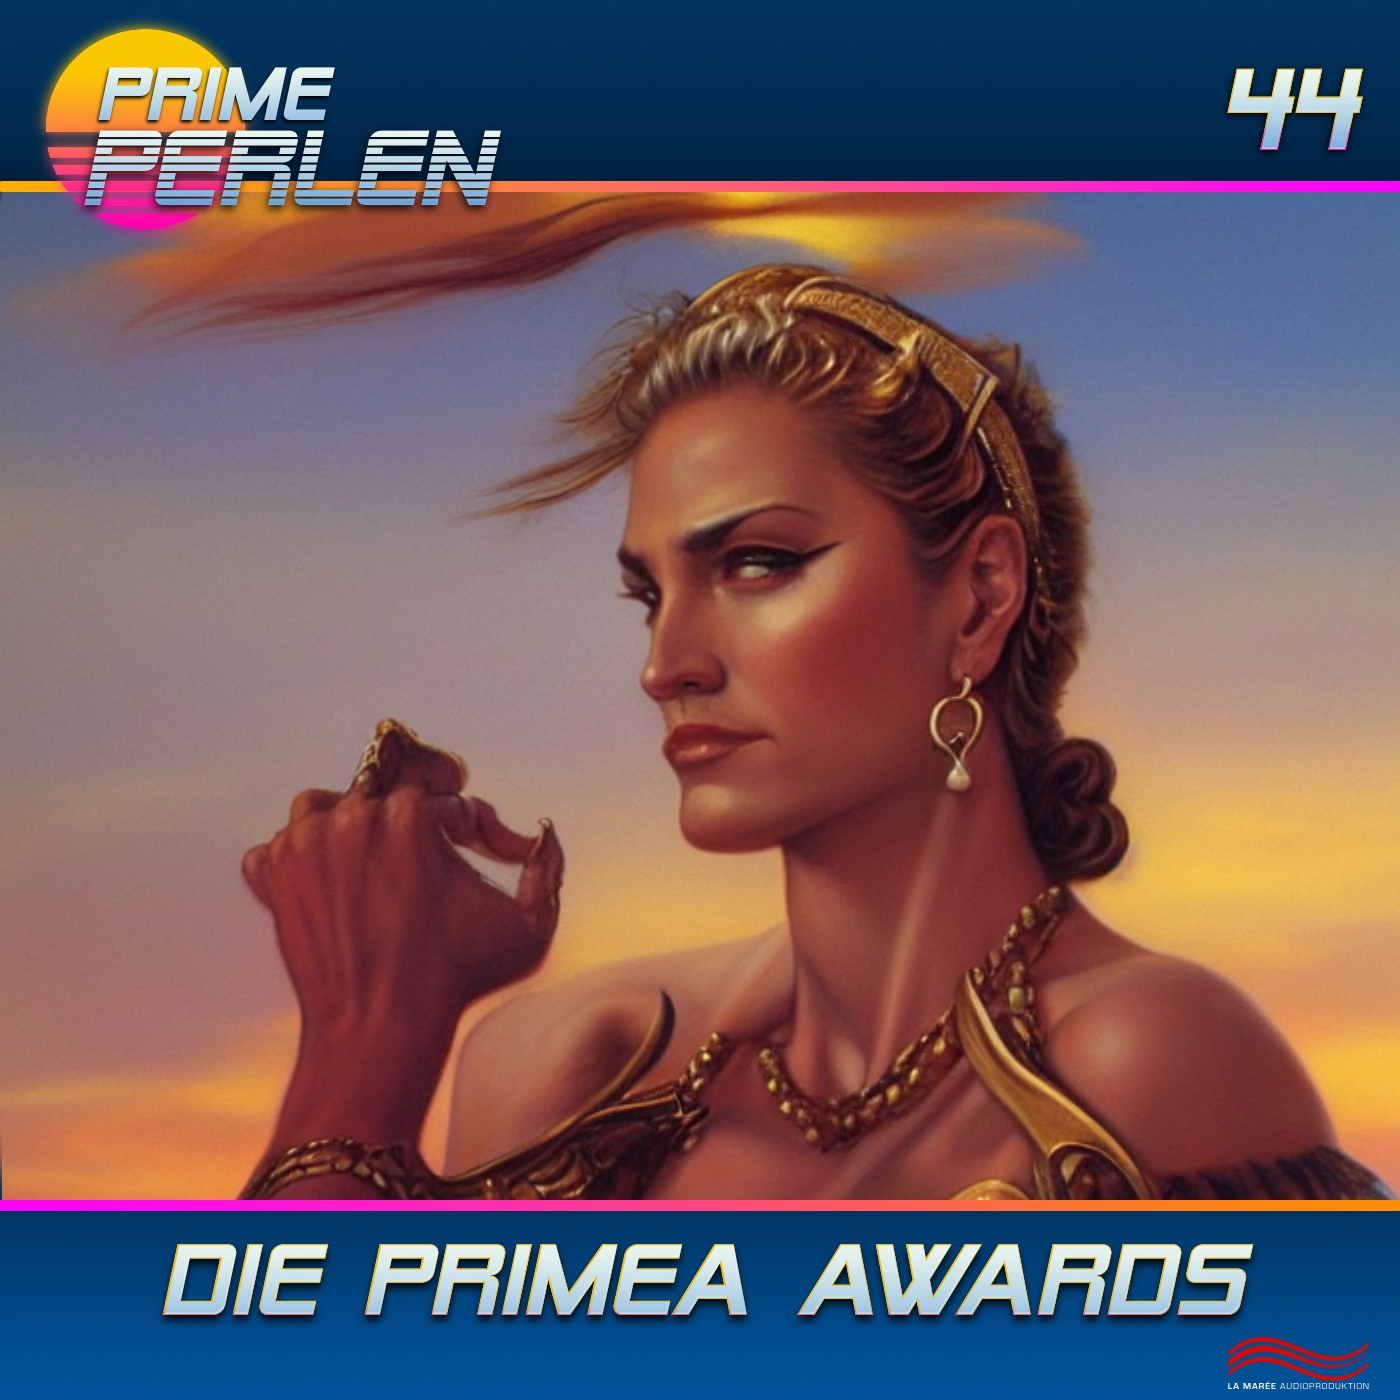 Prime Perlen #44 – Die Primea Awards - das Beste der Staffel 4